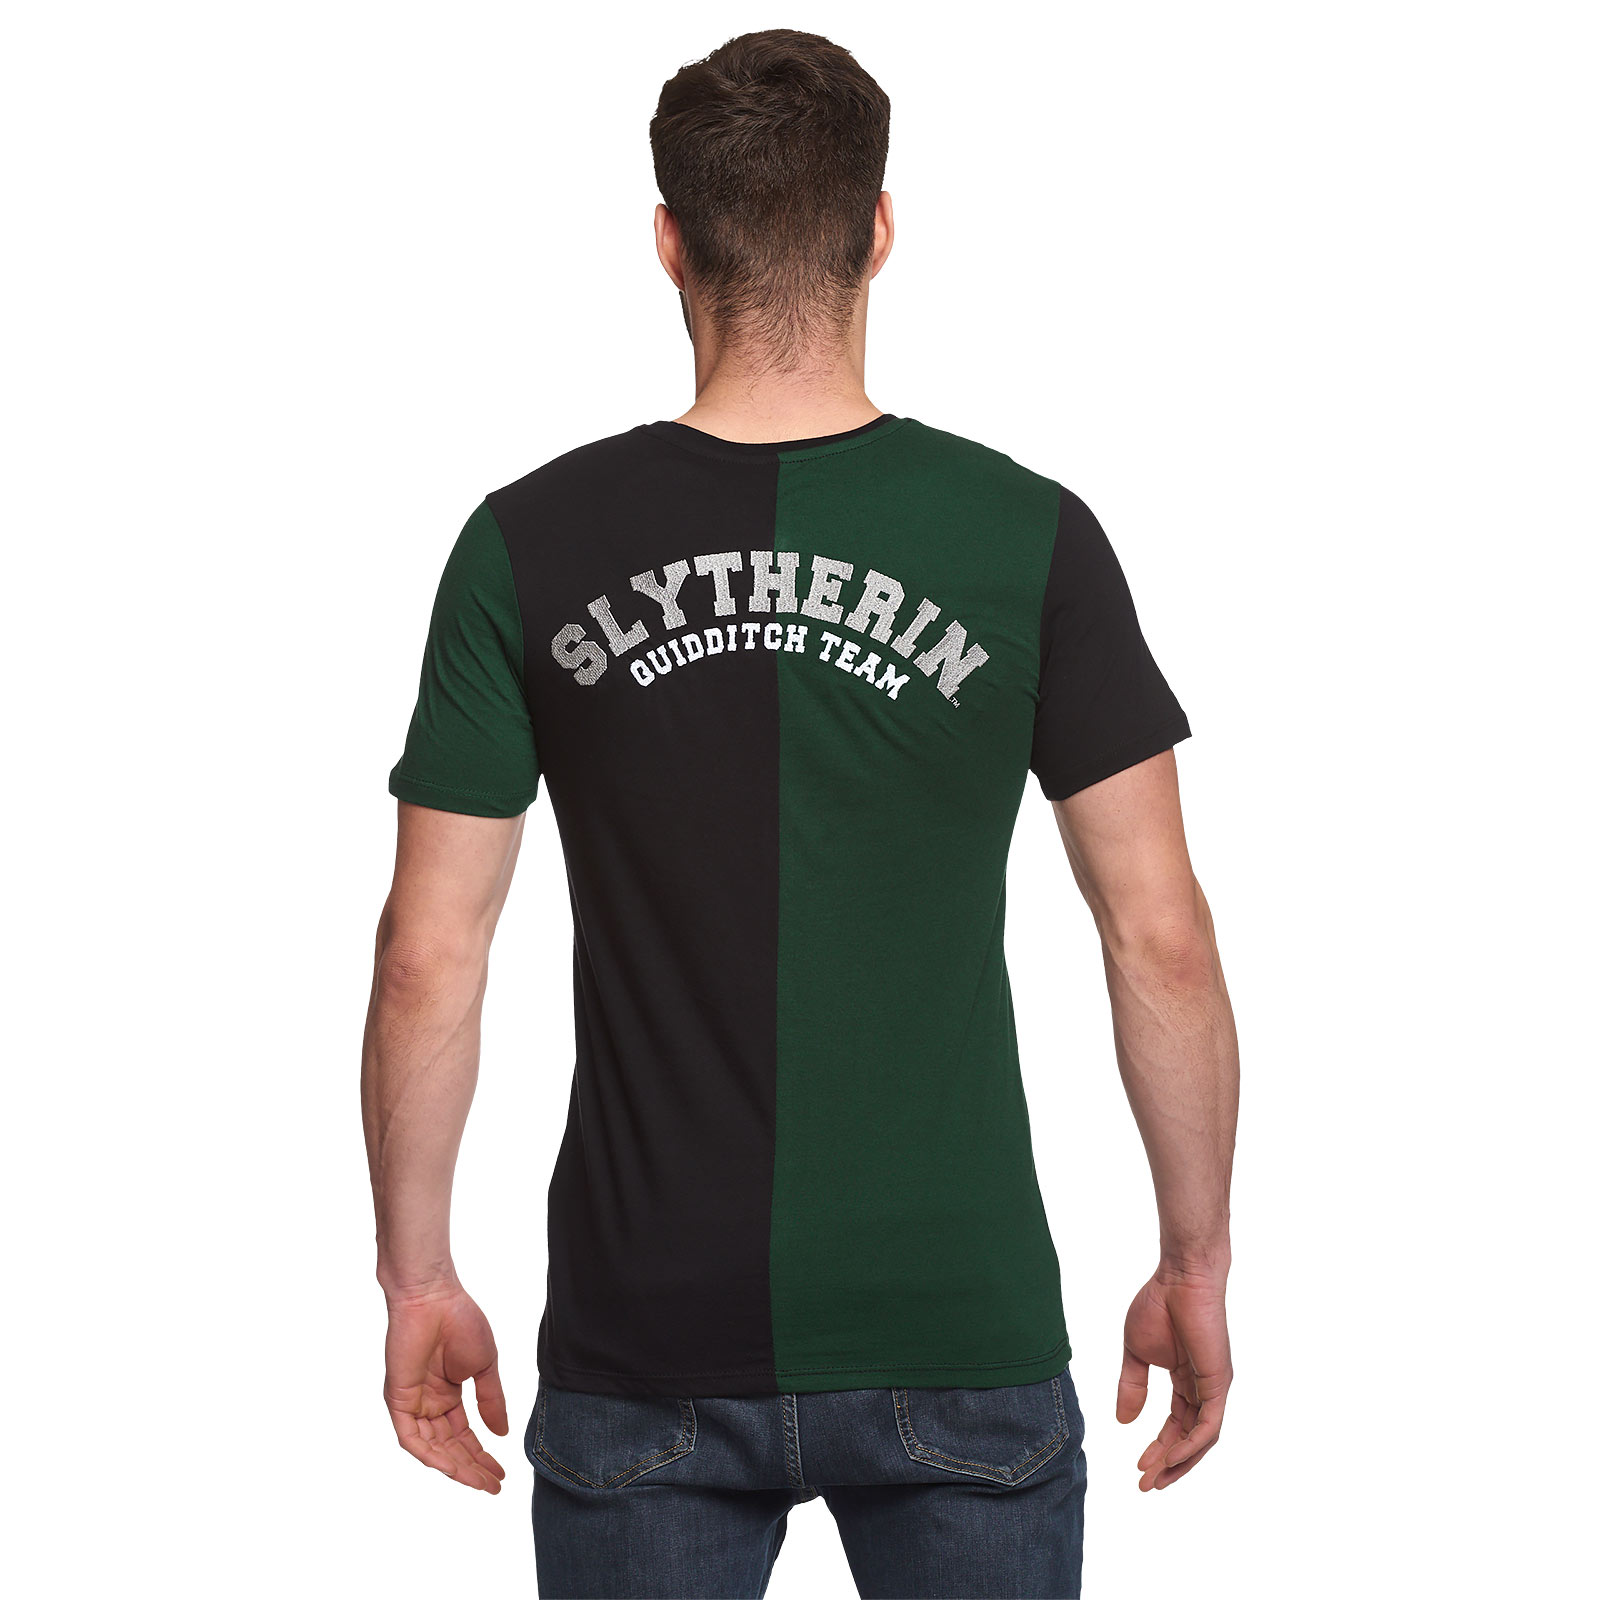 Harry Potter - Slytherin Toernooi T-Shirt groen-zwart